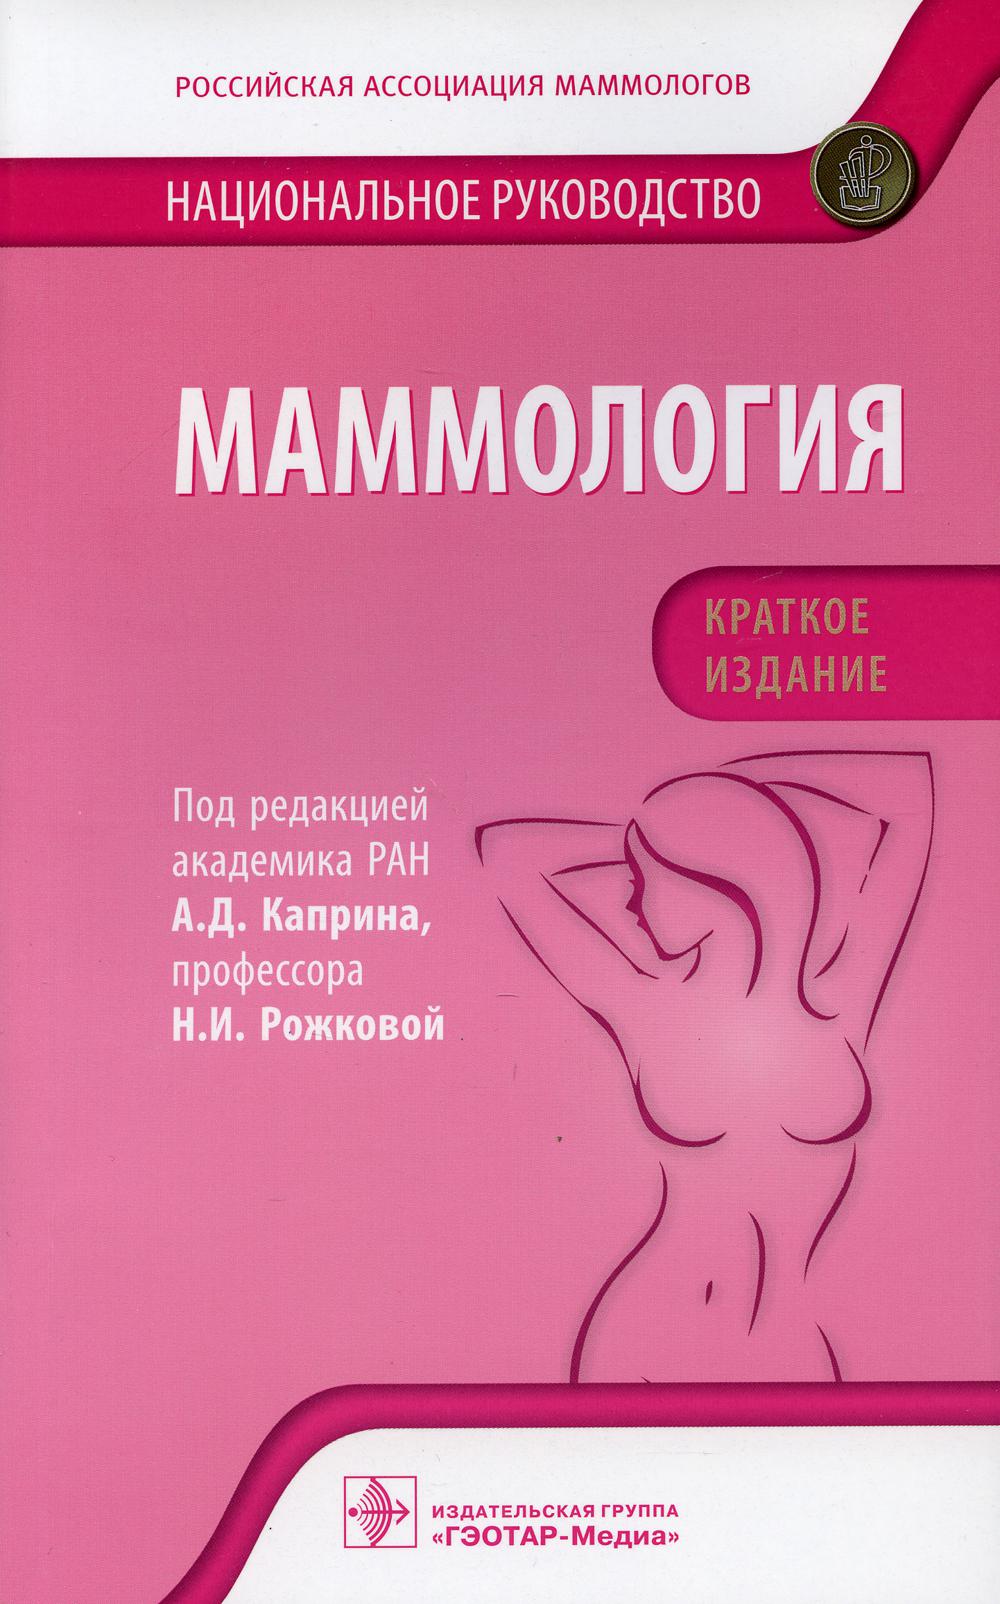 Маммология: национальное руководство